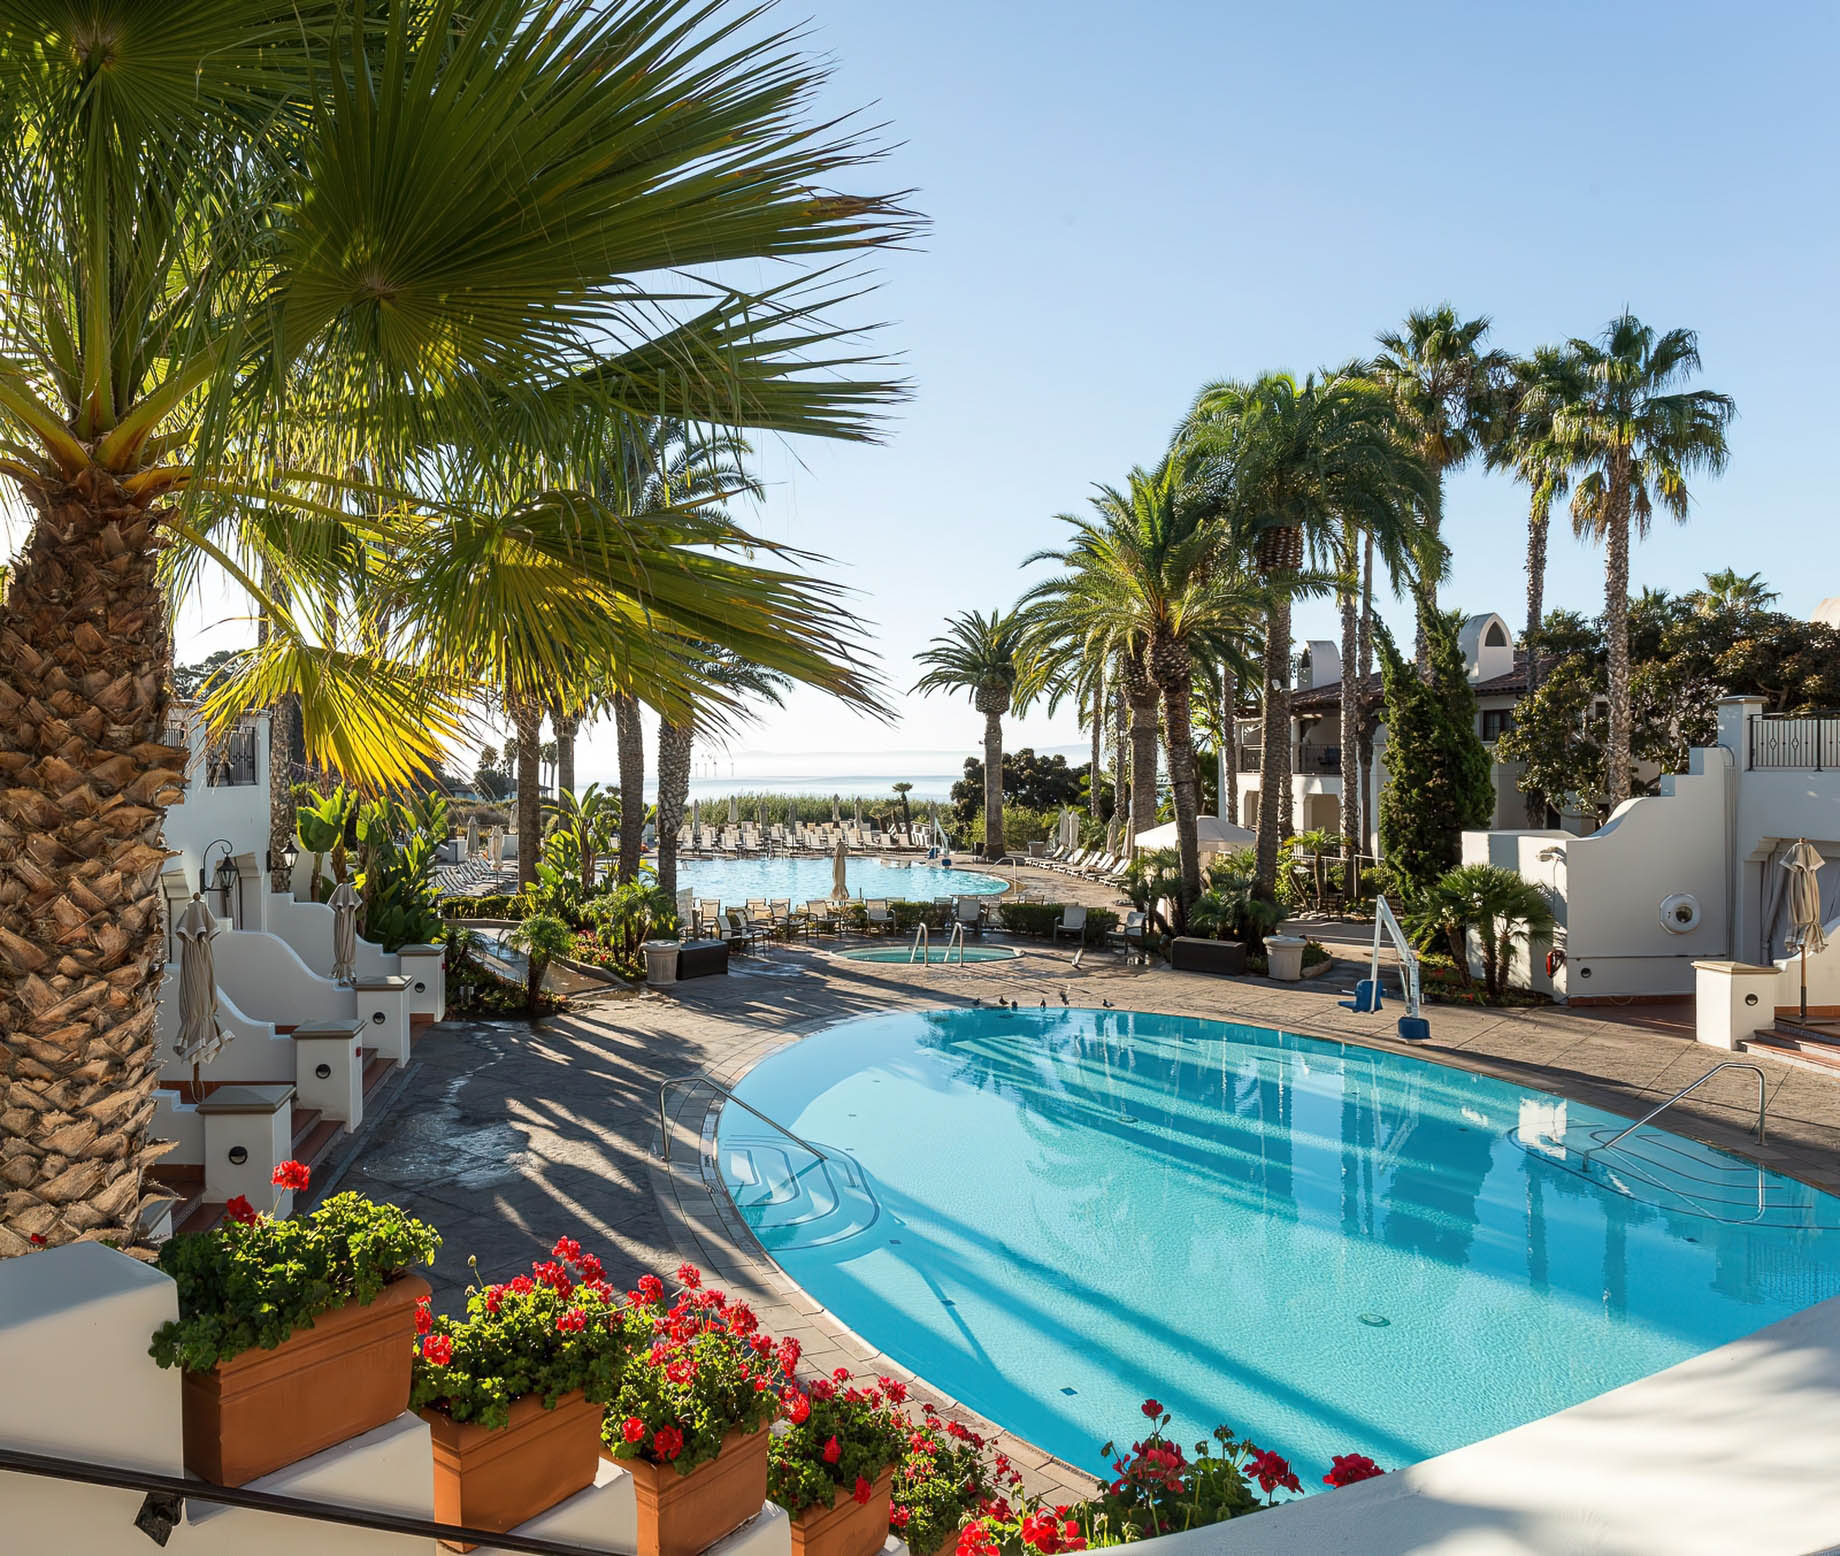 The Ritz-Carlton Bacara, Santa Barbara Resort – Santa Barbara, CA, USA – Resort Pool Deck View